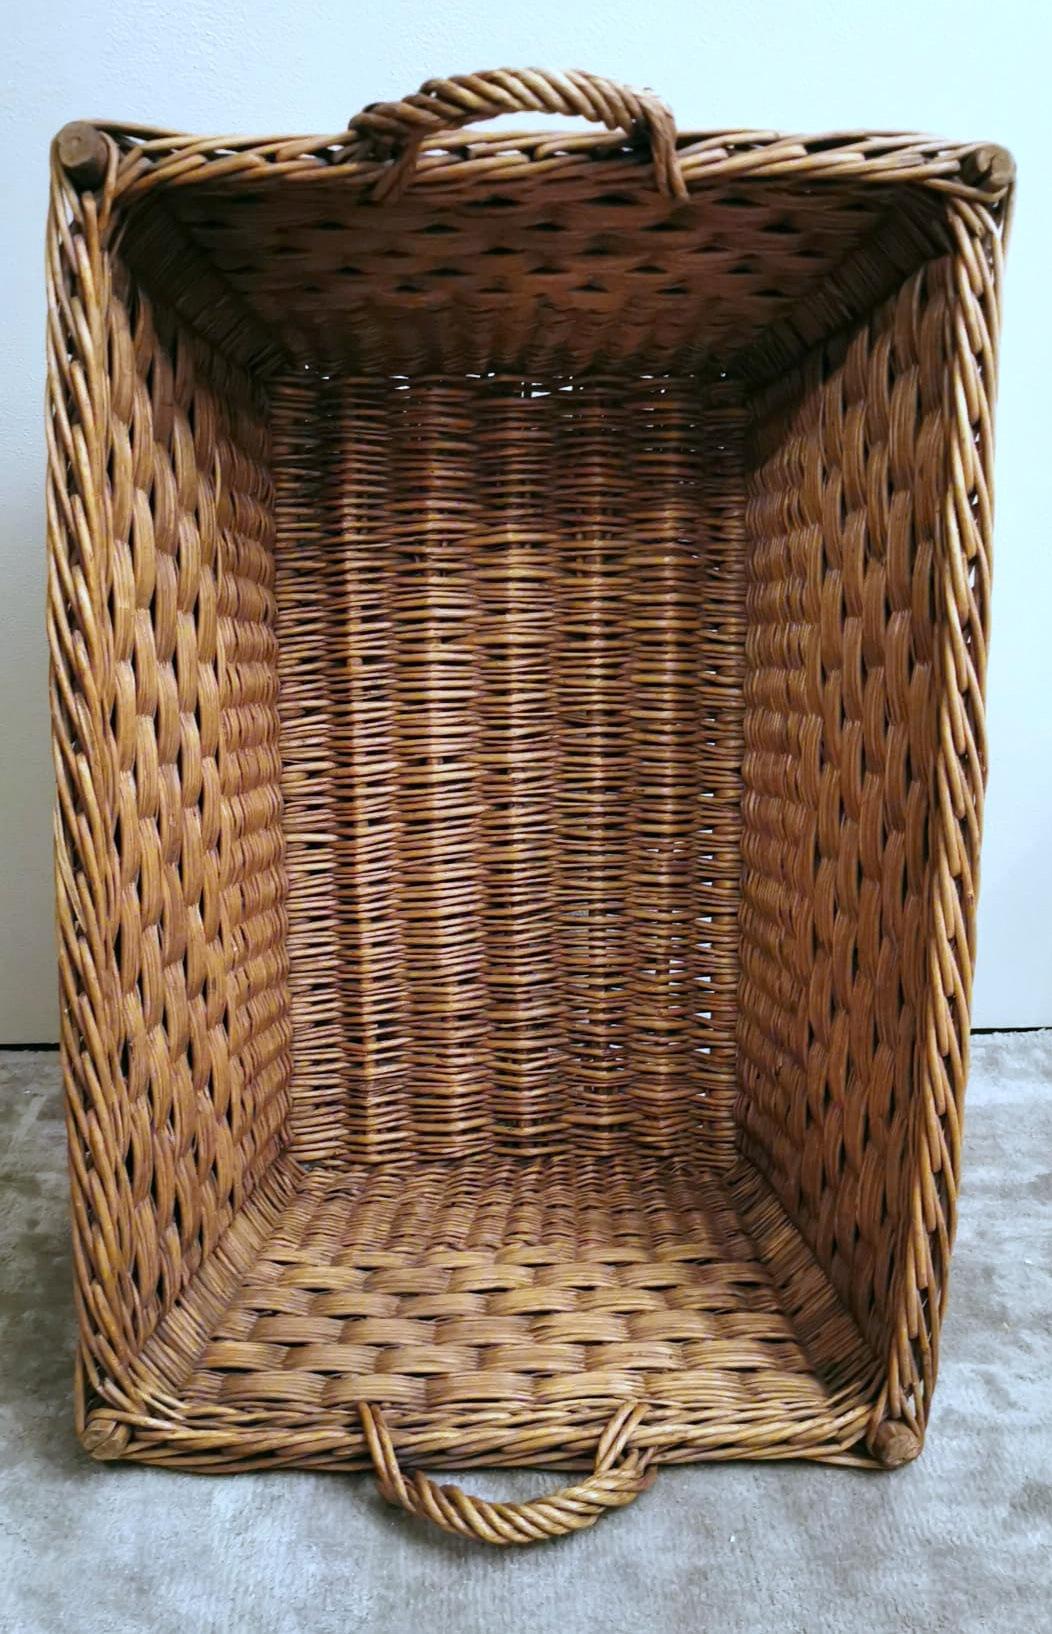 bread basket large